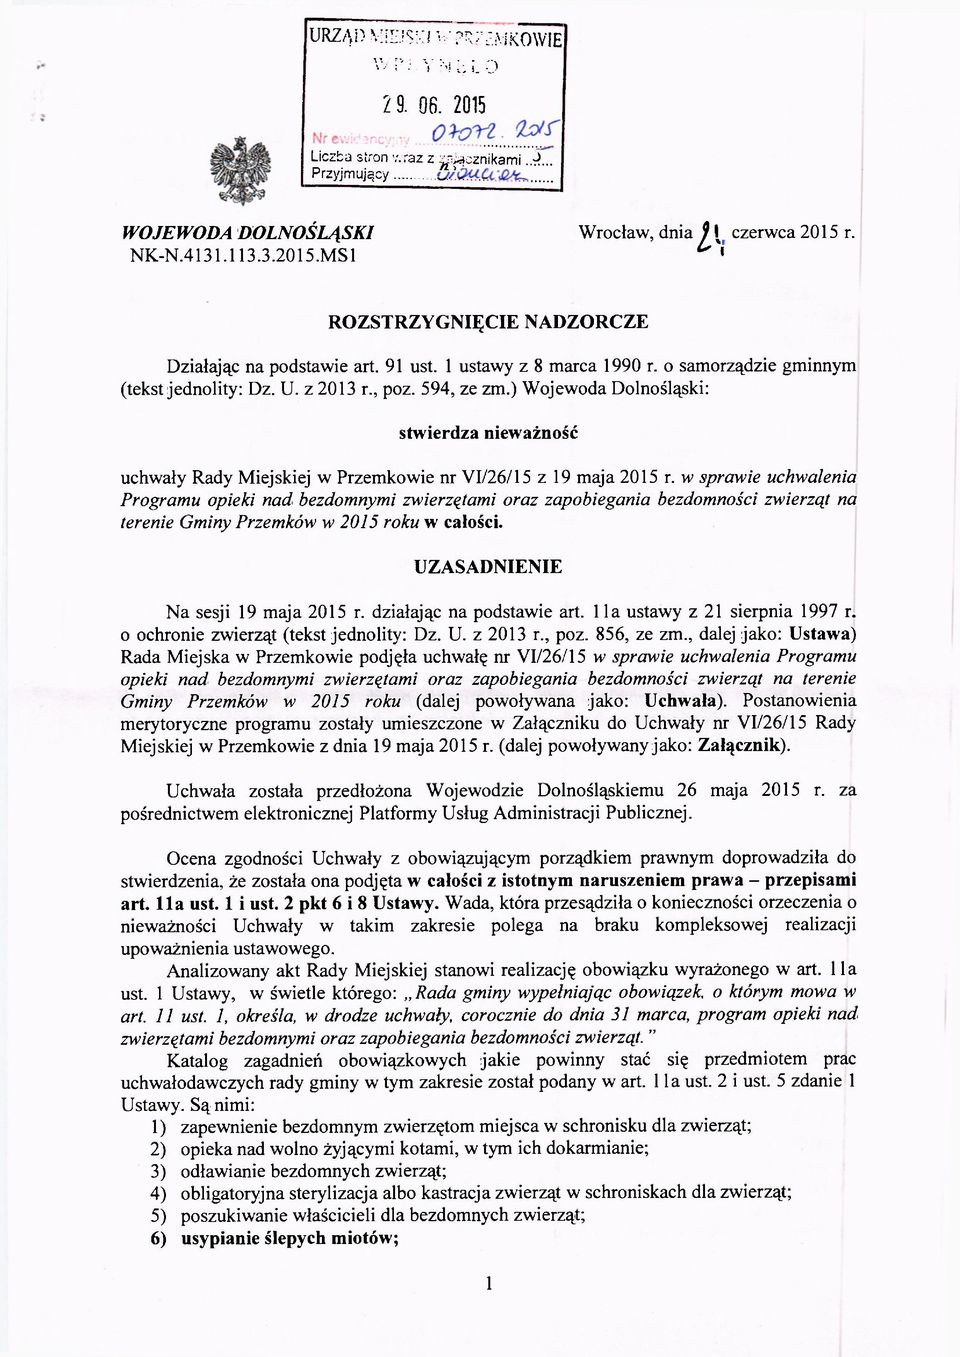 ) Wojewoda Dolnośląski: stwierdza nieważność uchwały Rady Miejskiej w Przemkowie nr VI/26/15 z 19 maja 2015 r.